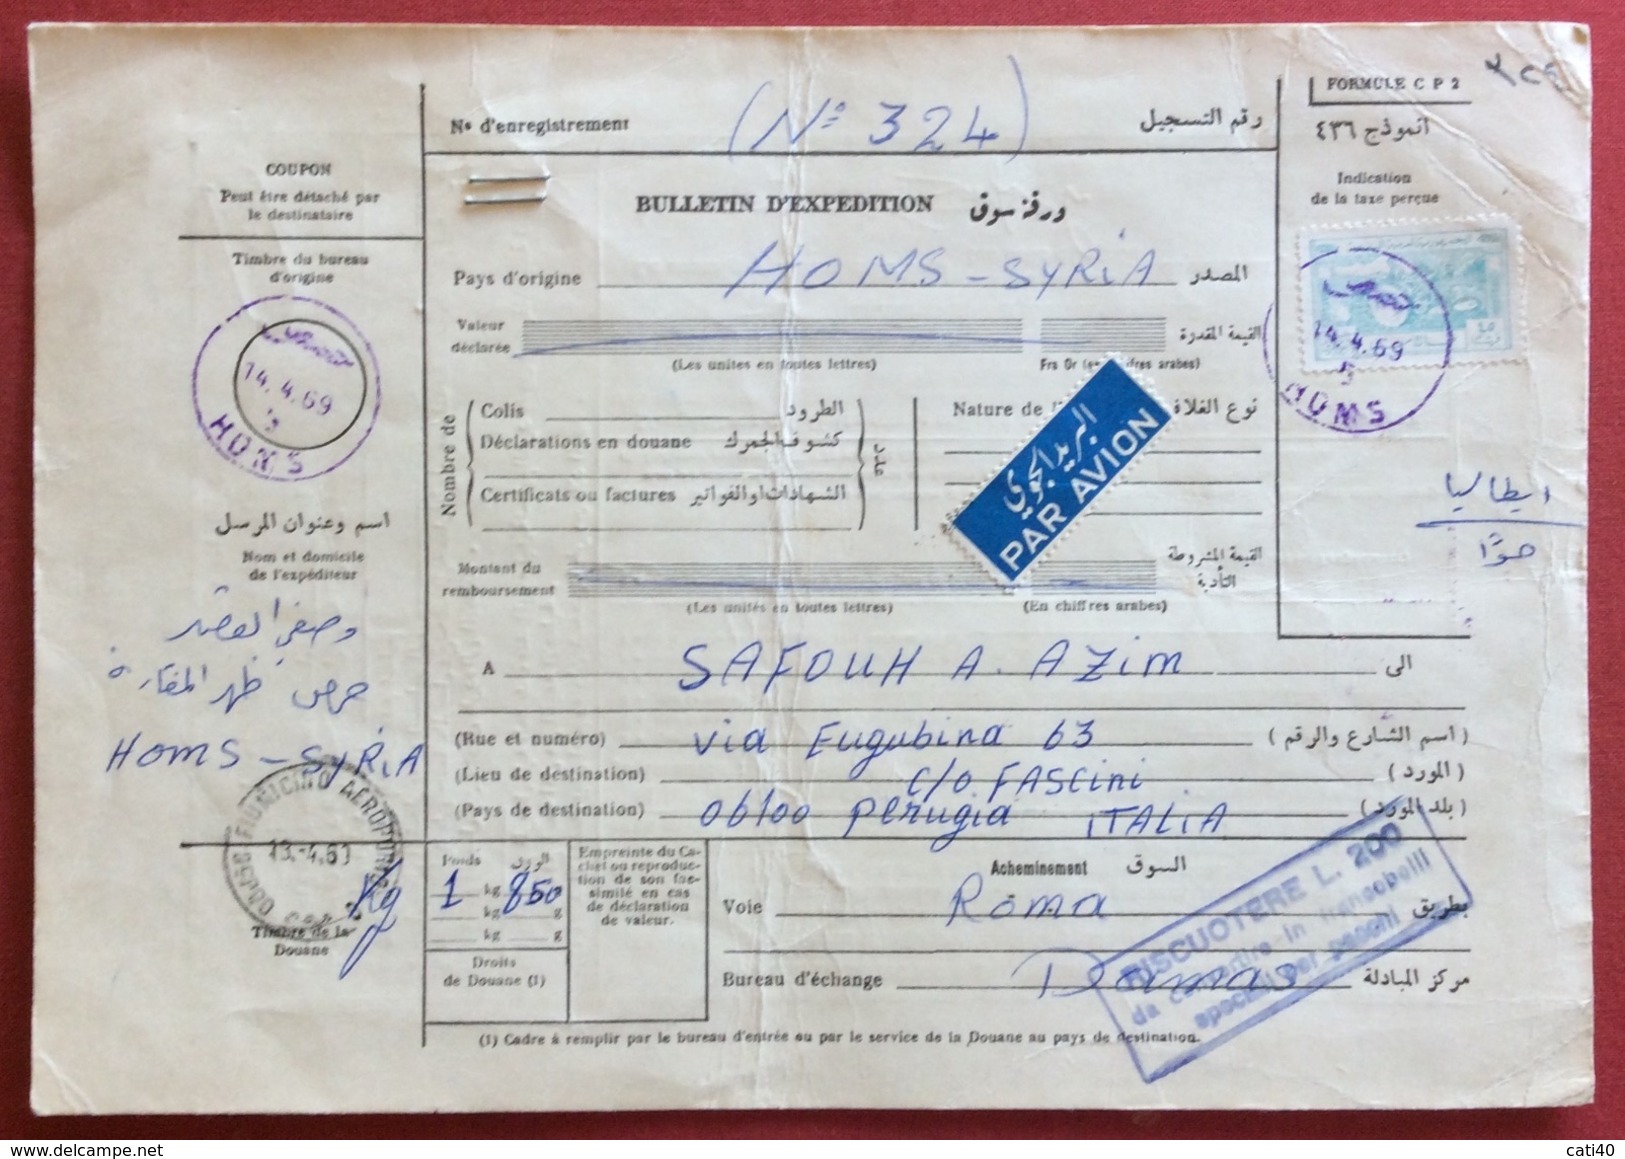 HOMS SYRIA SIRIA 14/4/69  BOLLETTINO PACCHI PAR AVION PER PERUGIA + FIUMICINO AEROPORT0 IN DATA 18/4/69 - Storia Postale